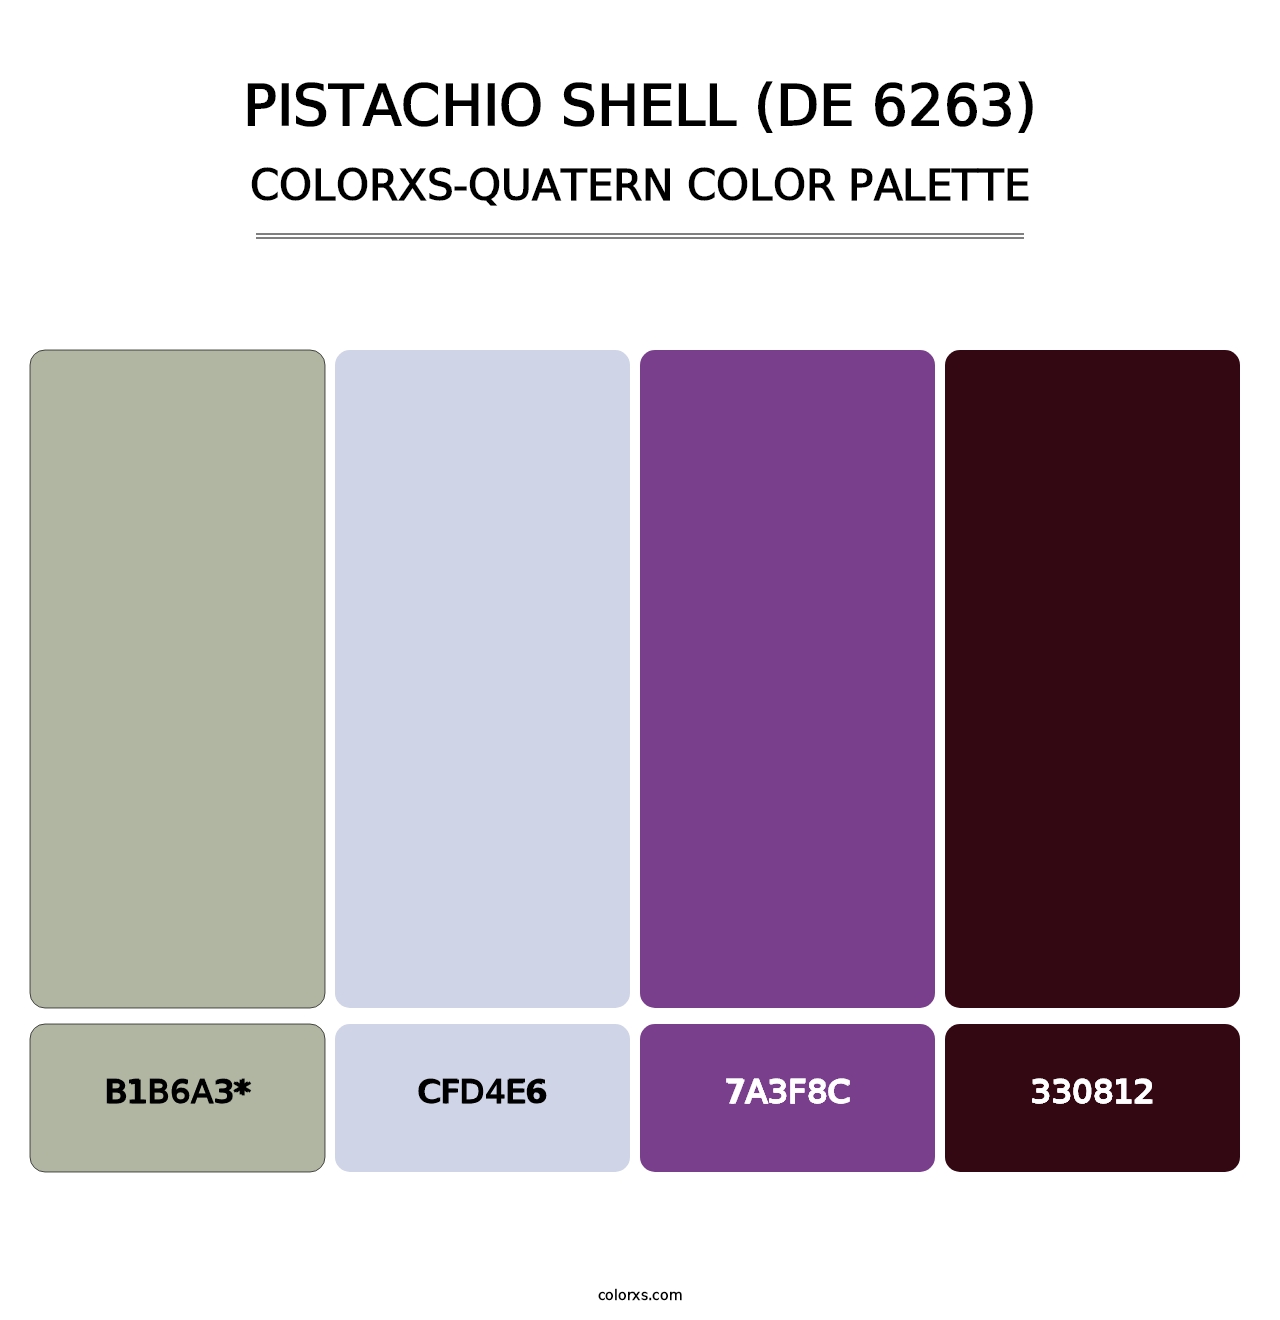 Pistachio Shell (DE 6263) - Colorxs Quatern Palette